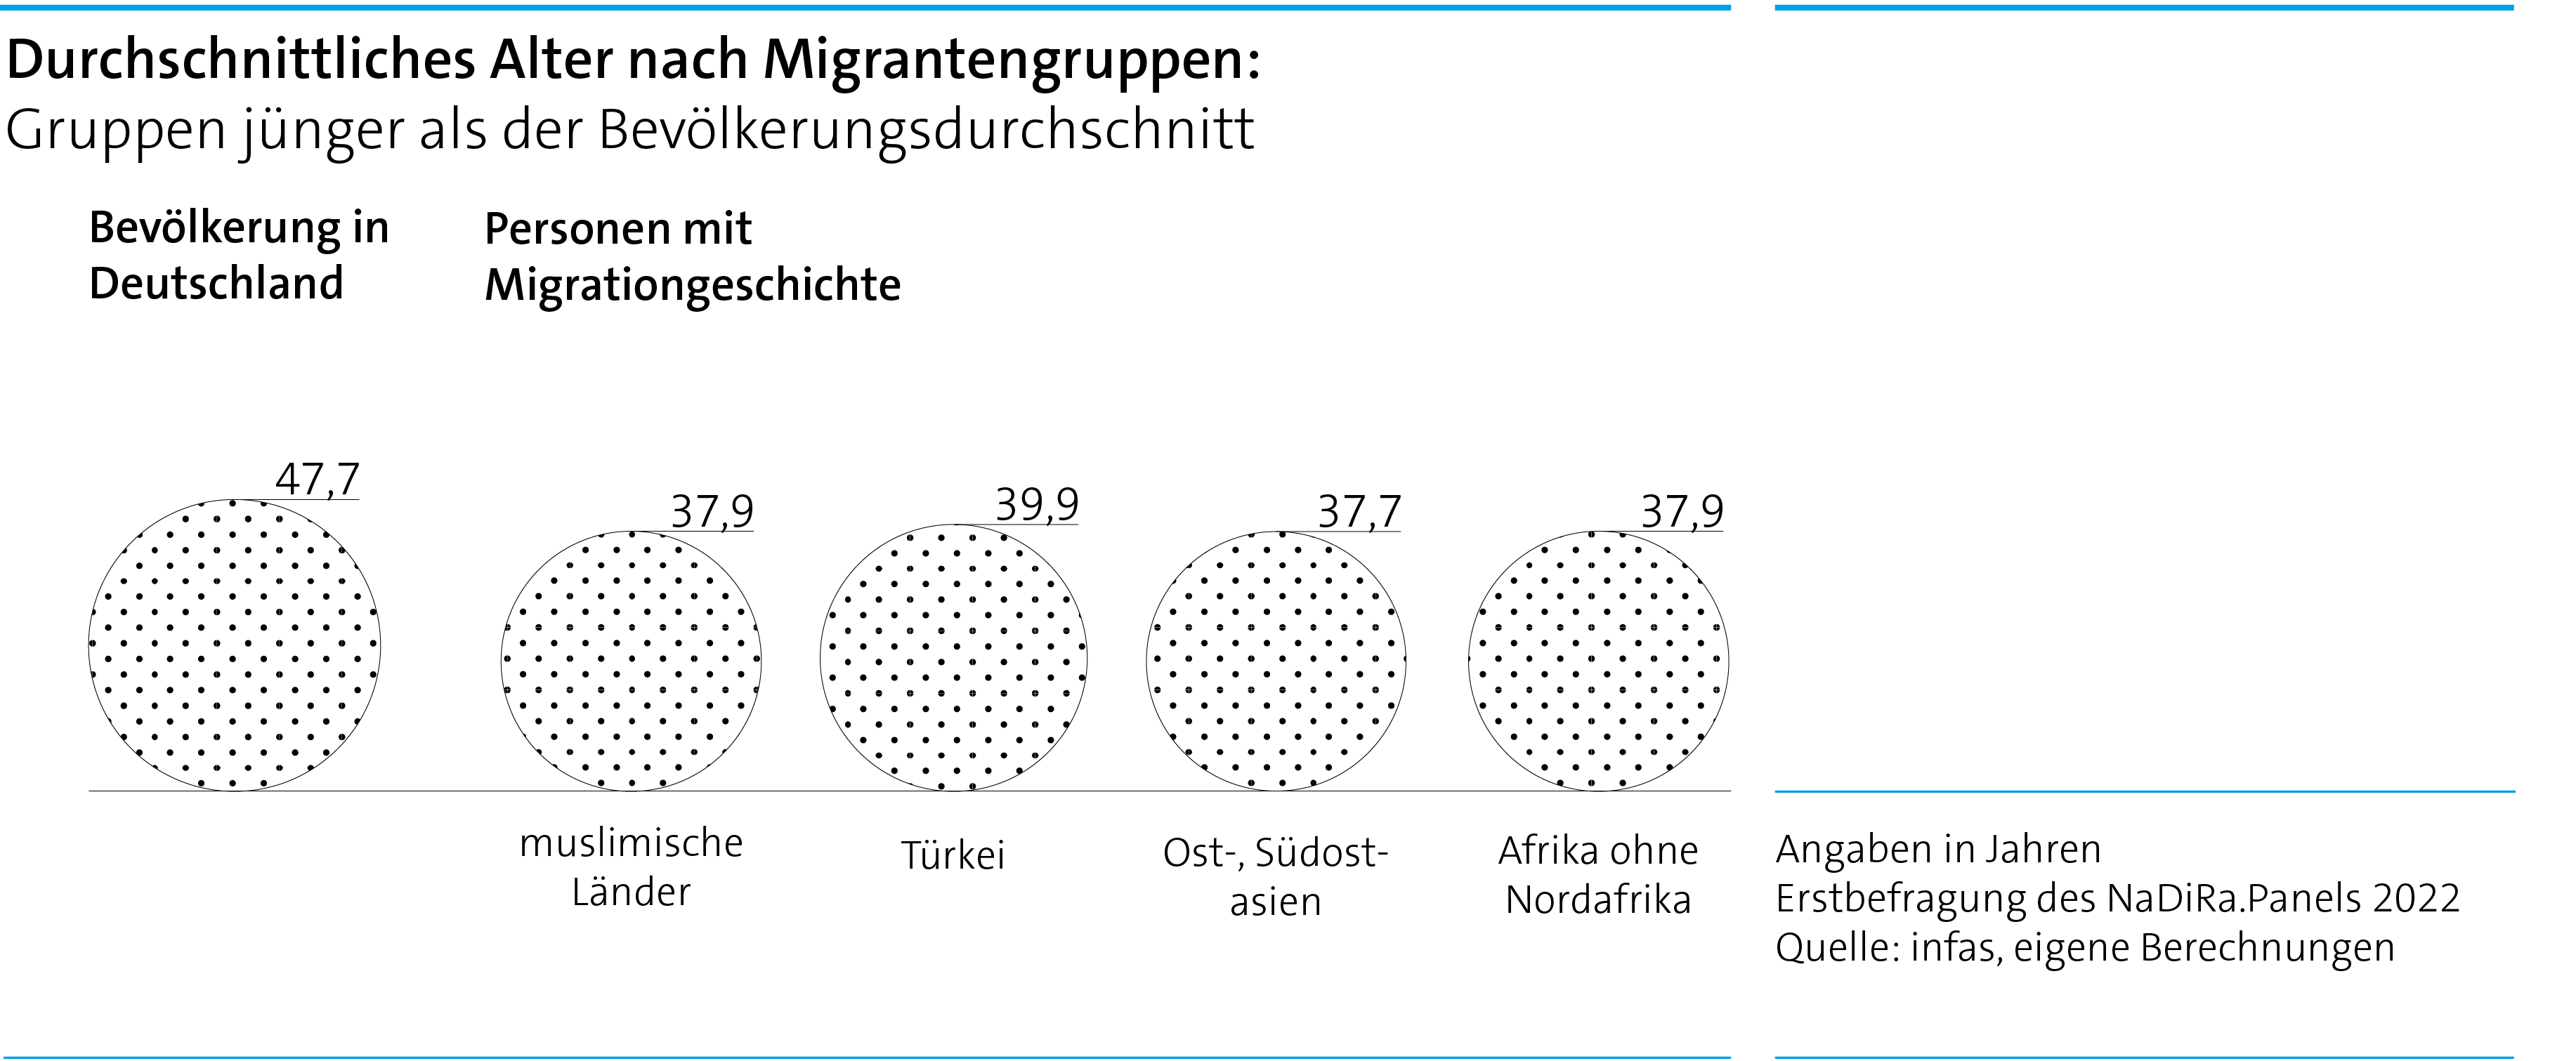 Kreisdiagramm. Titel: Durchschnittliches Alter nach Migrantengruppen. Gruppen jünger als der Bevölkerungsdurchschnitt. 